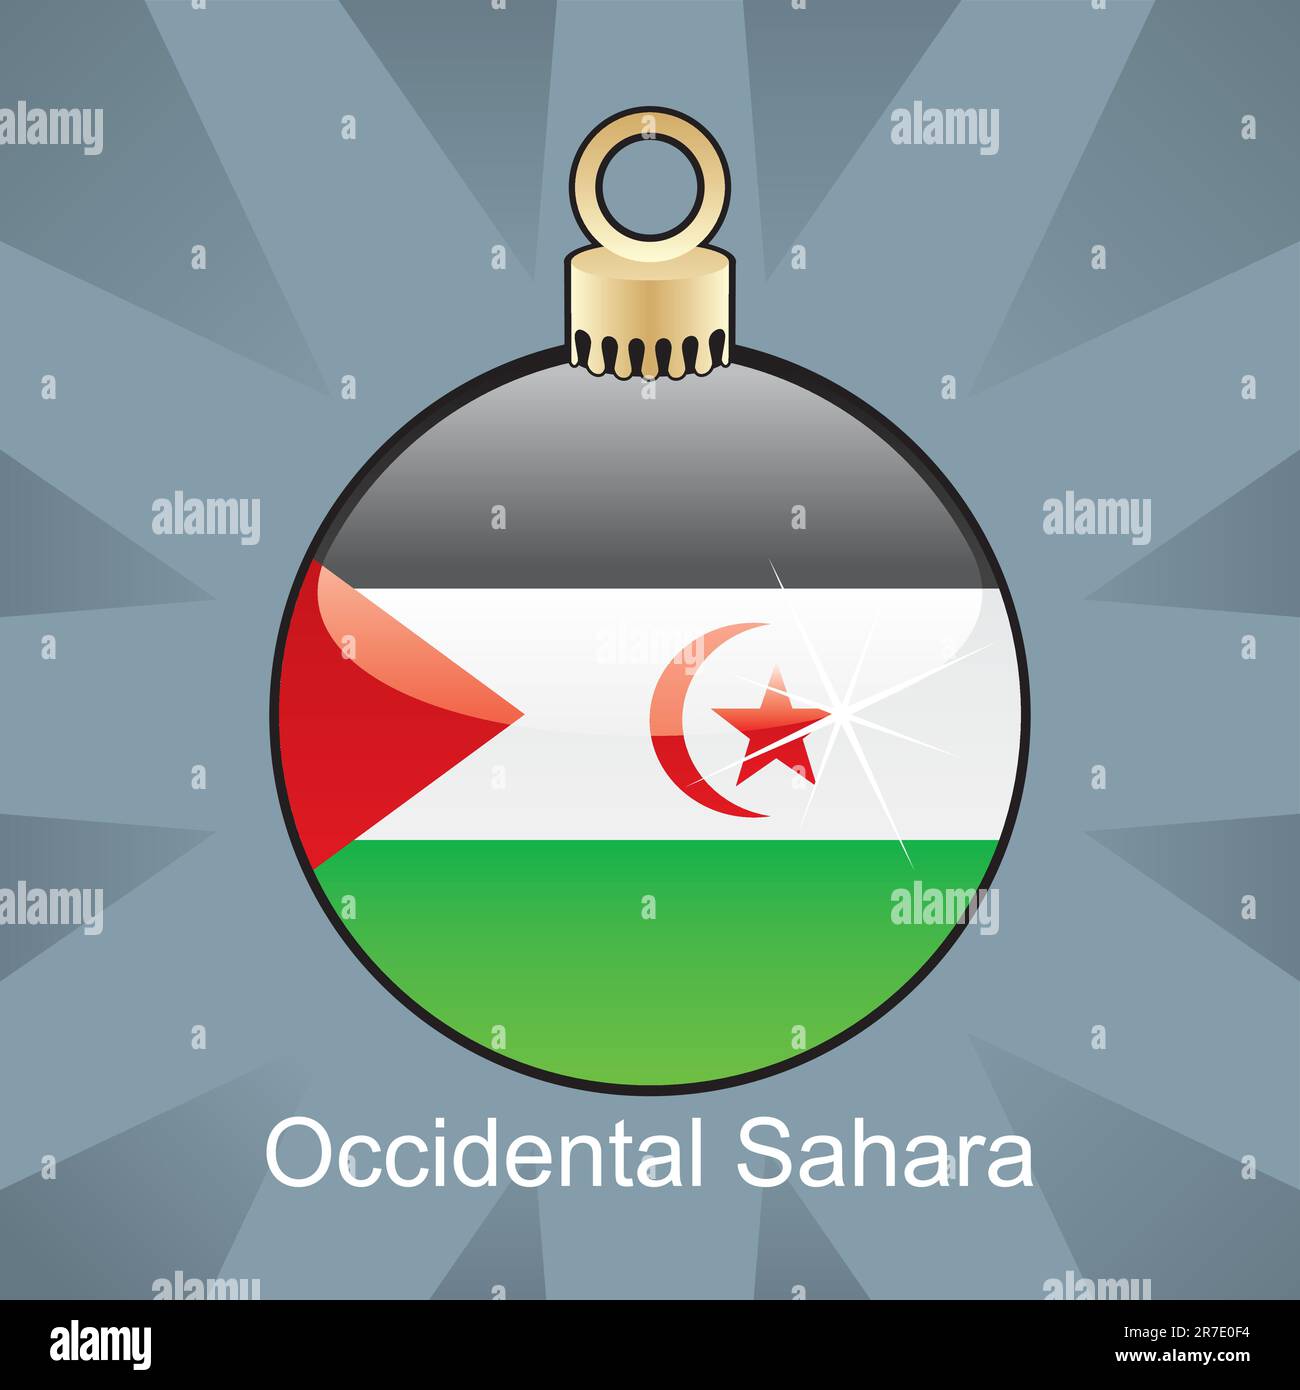 fully editable vector illustration of isolated occidental sahara flag in christmas bulb shape Stock Vector